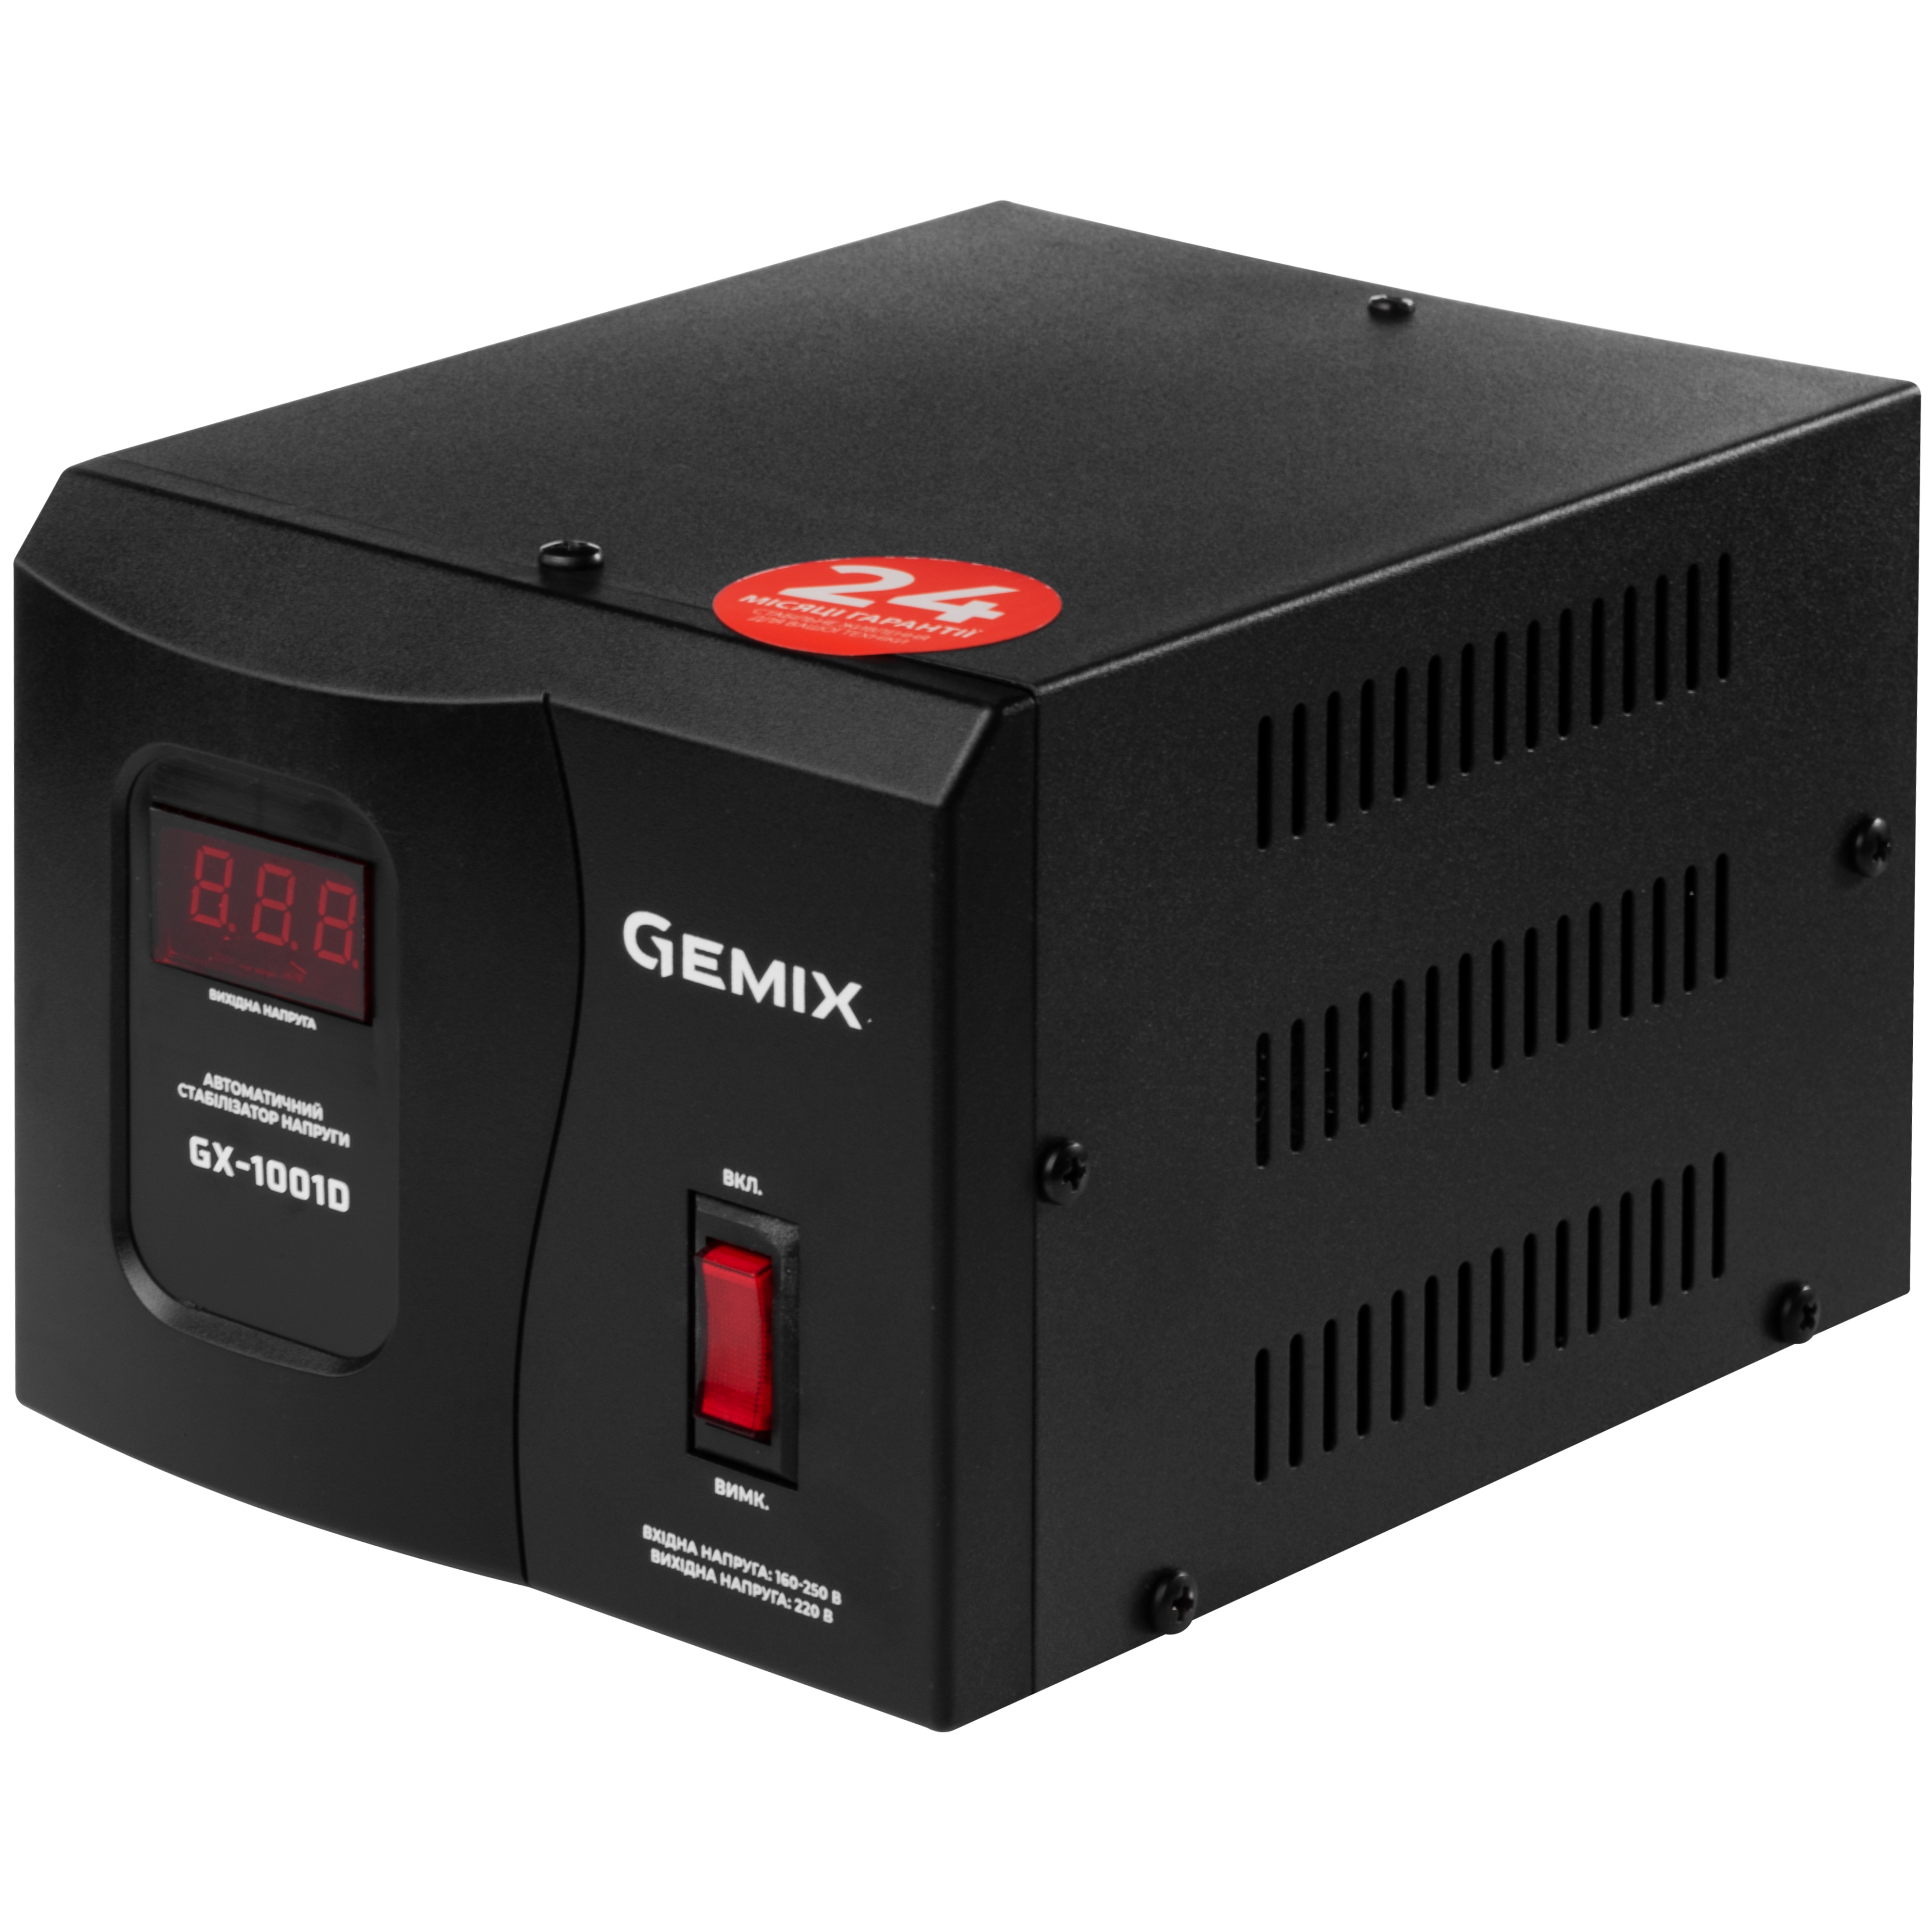 Характеристики однофазный стабилизатор напряжения Gemix GX-1001D